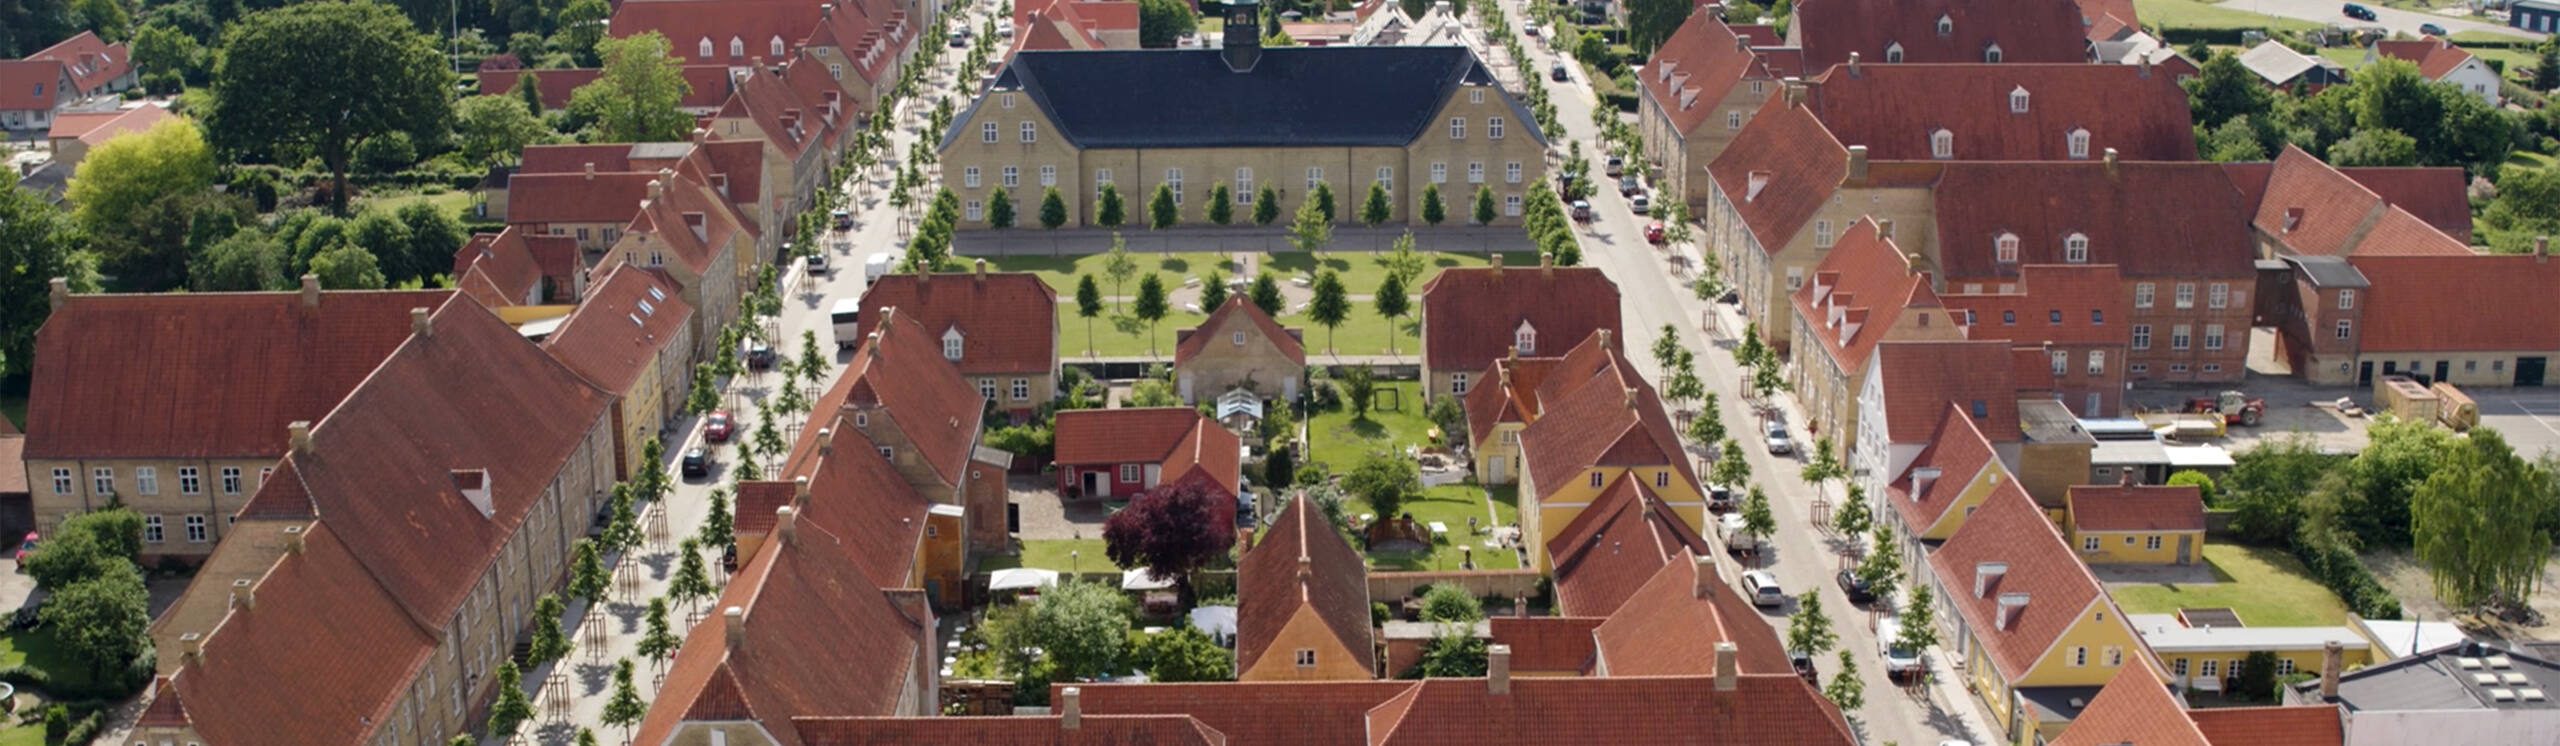 Christiansfeld, une colonie de l’Église morave